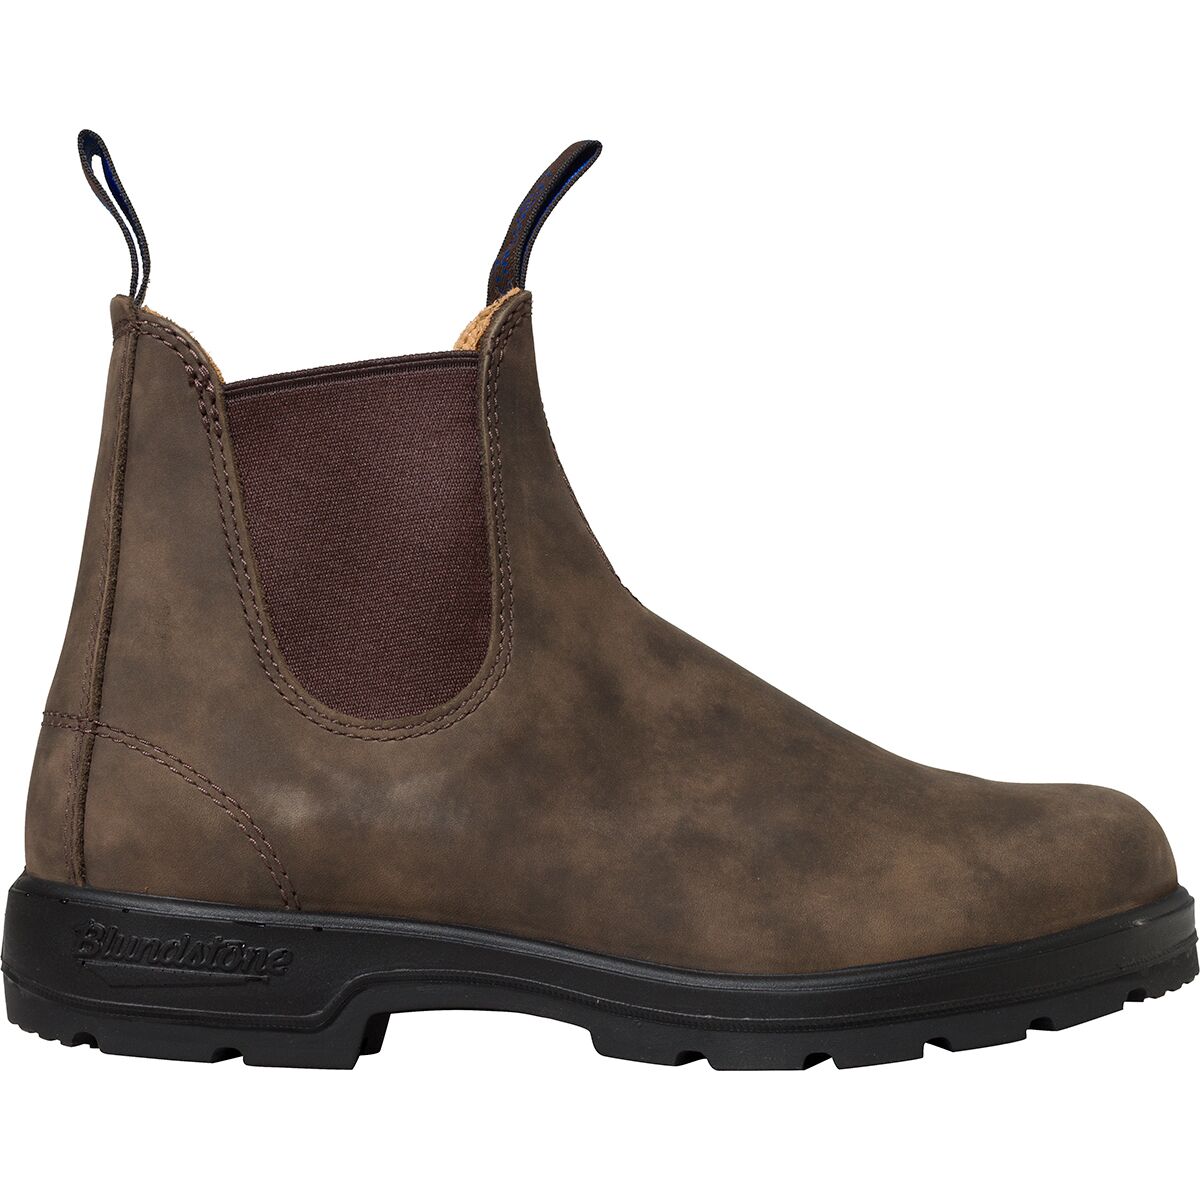 Blundstone Thermal Boot - Women's - Footwear | Backcountry